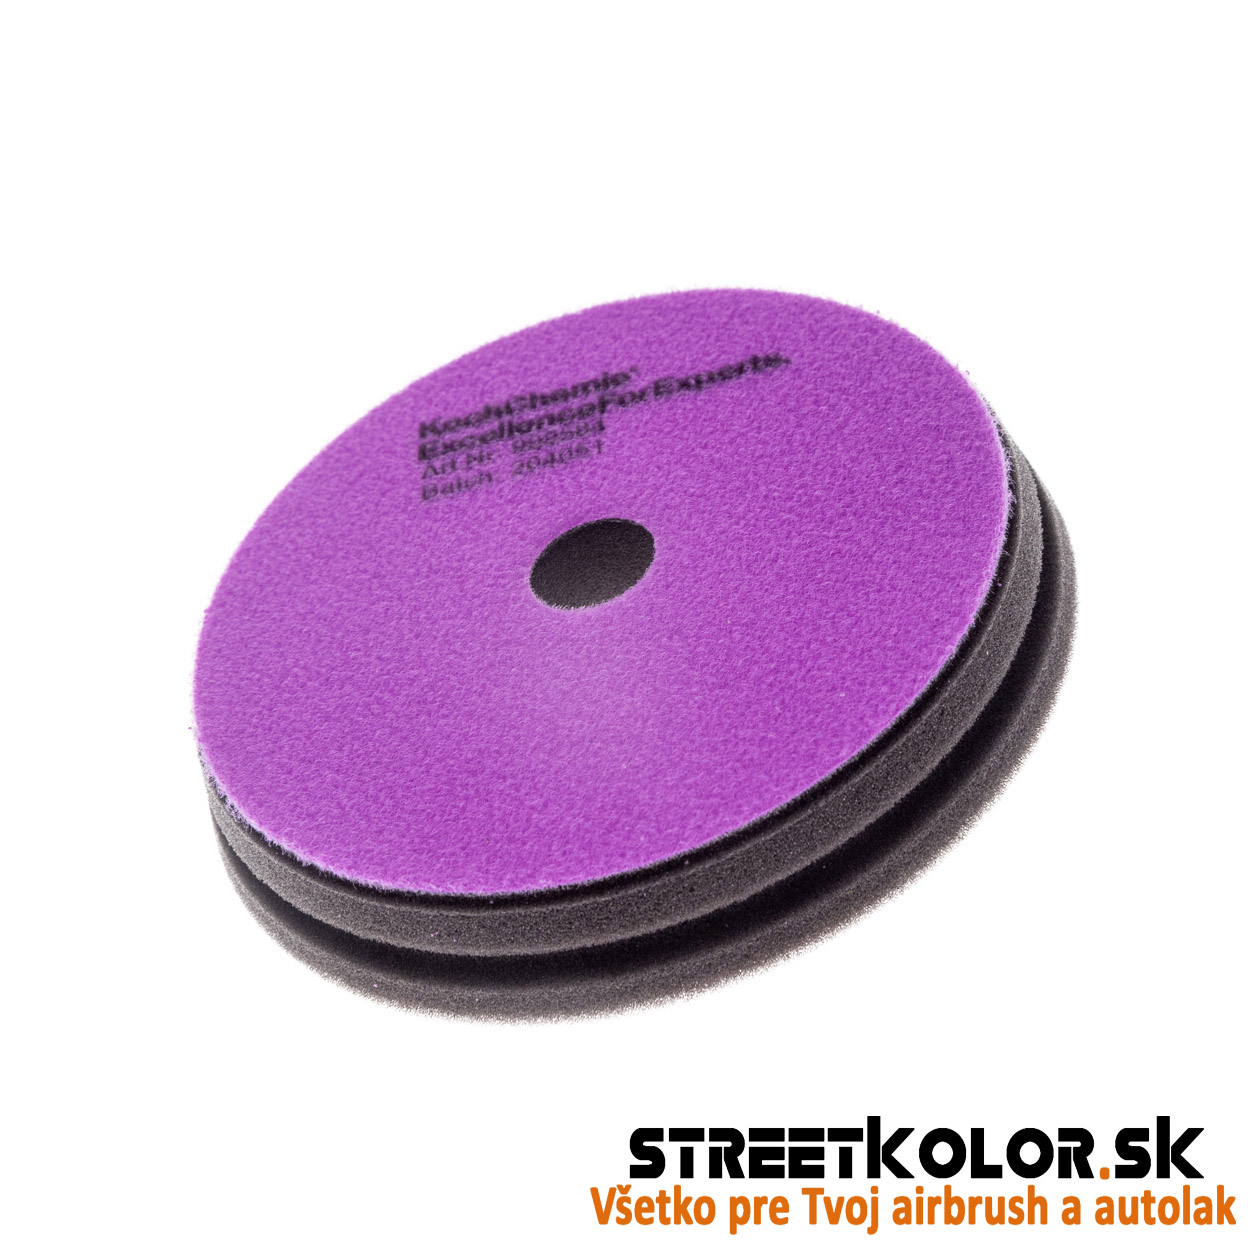 KochChemie Finálny antihologramový fialový leštiaci kotúč Micro Cut Pad 76x 23mm